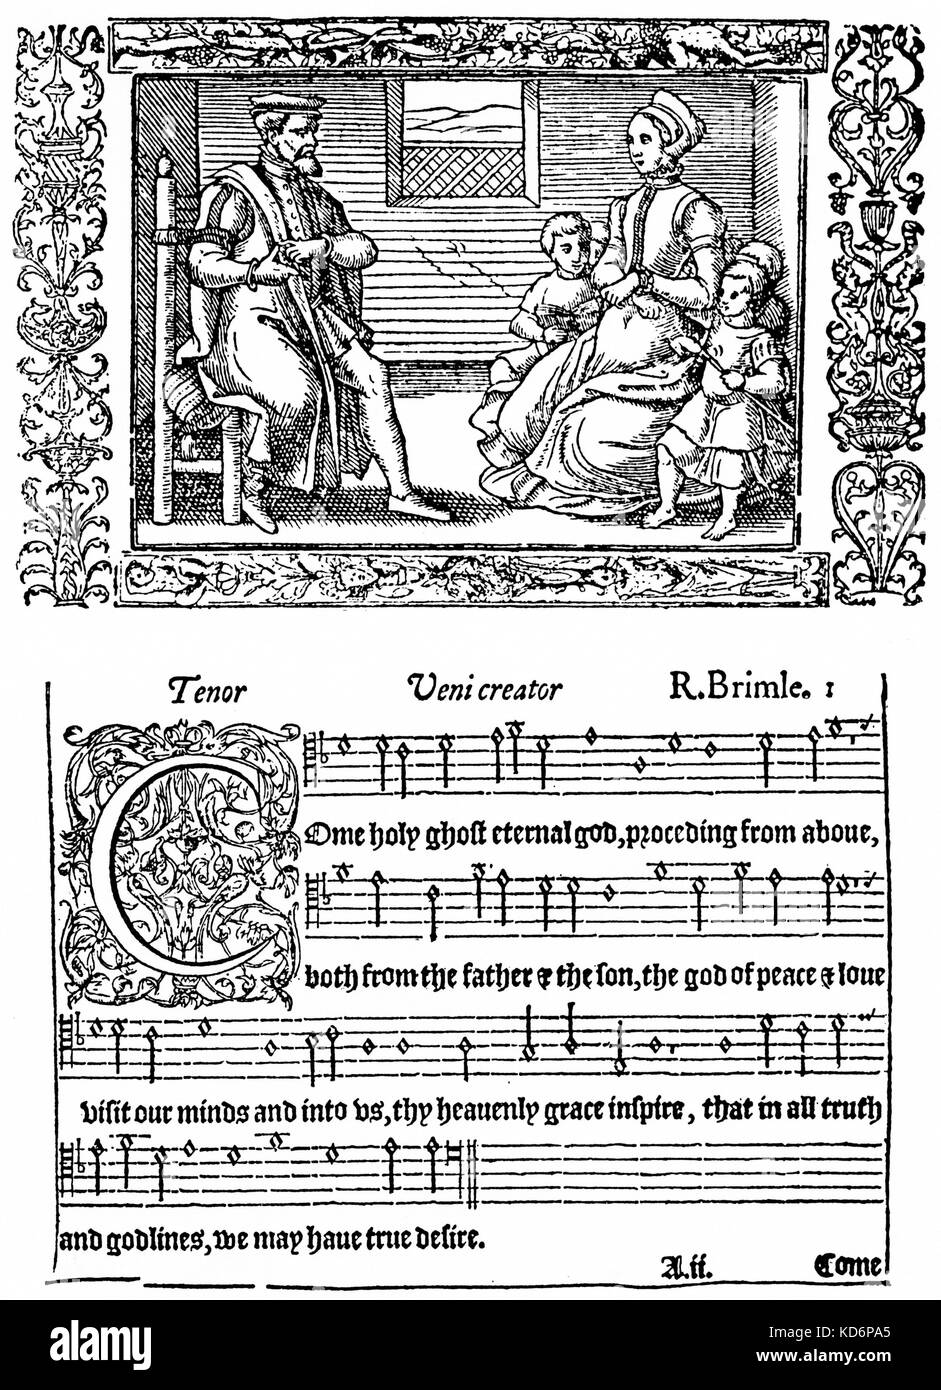 Der inländische Gesangsunterricht, 1563. Von John's Day" Die gesamte Psalmes in foure Partes". Der Vater ist Lehre seine Frau und seine Kinder, wie mit dem 'Guidonian Hand' zu singen, eine Methode, die verwendet die Hand als Karte, erfunden von Guido d'Arezzo (995-1050) im AD 1030. Stockfoto